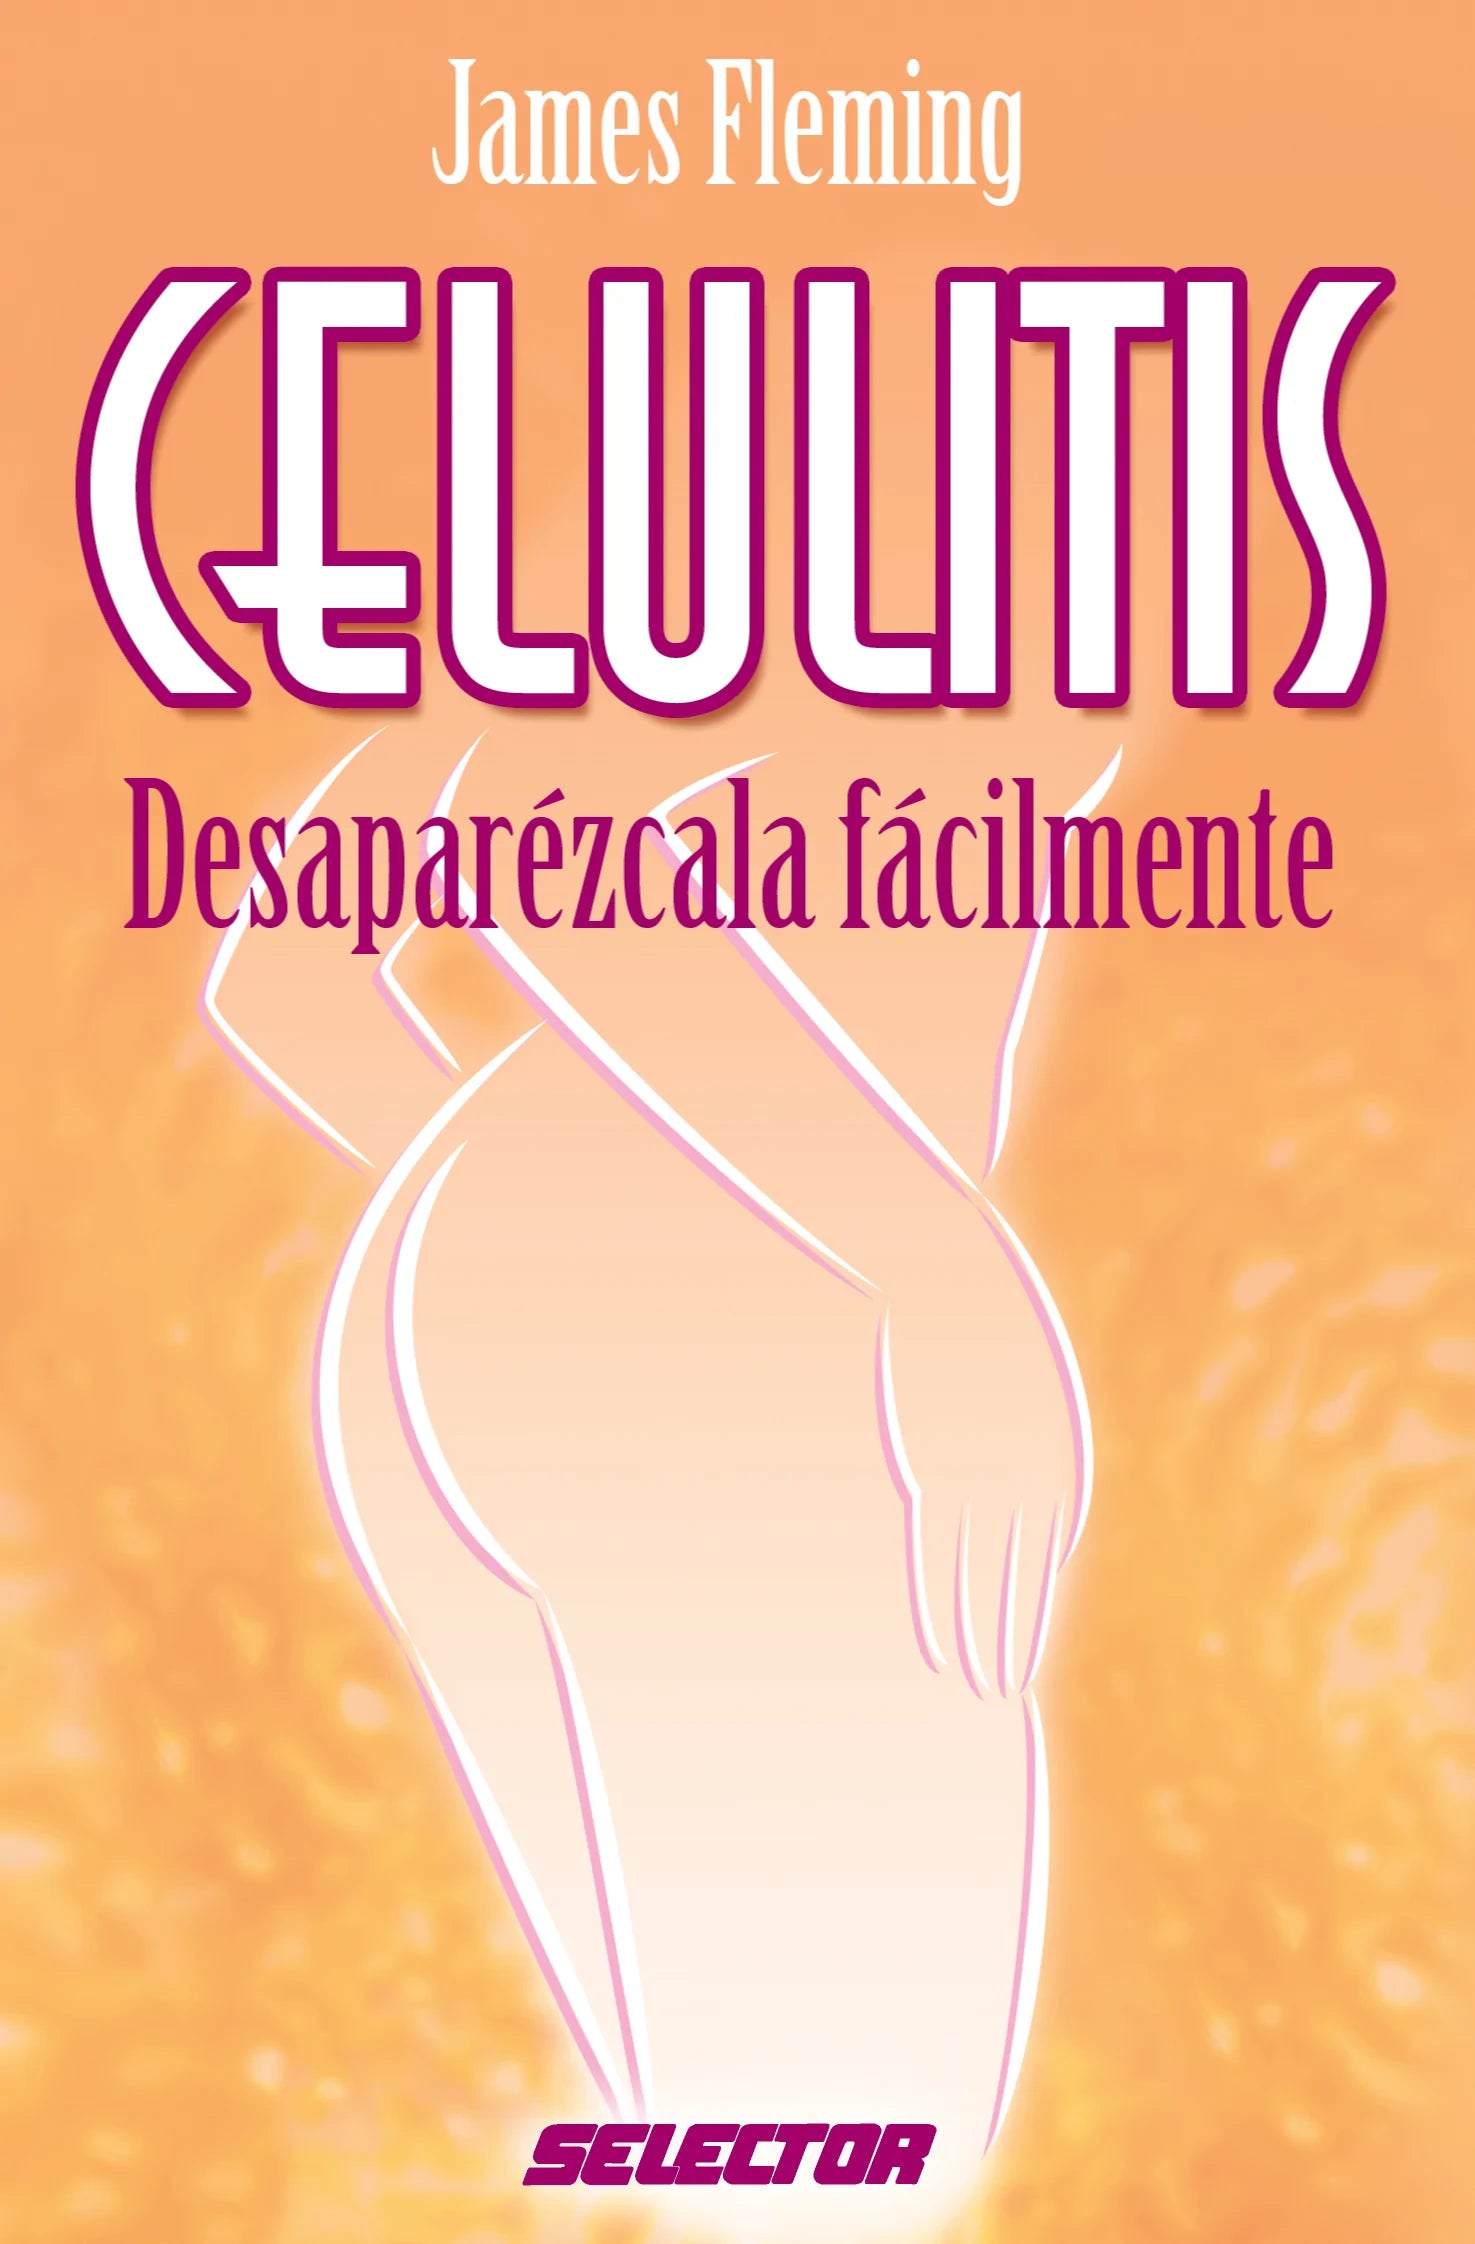 Celulitis - Editorial Selector